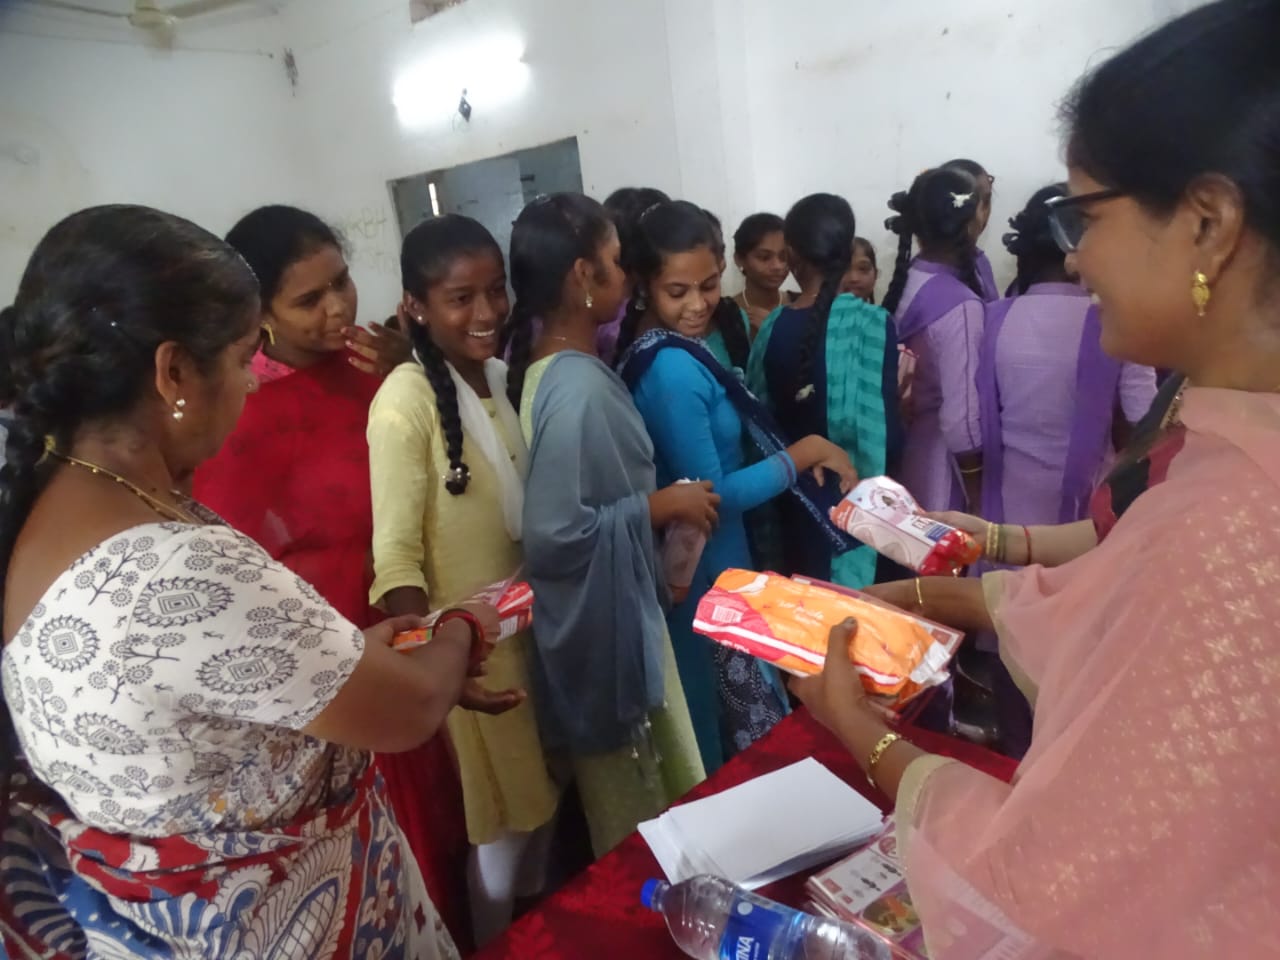 In Indien gibt eine indische Frau Menstruationsbinden an Schulmädchen aus.